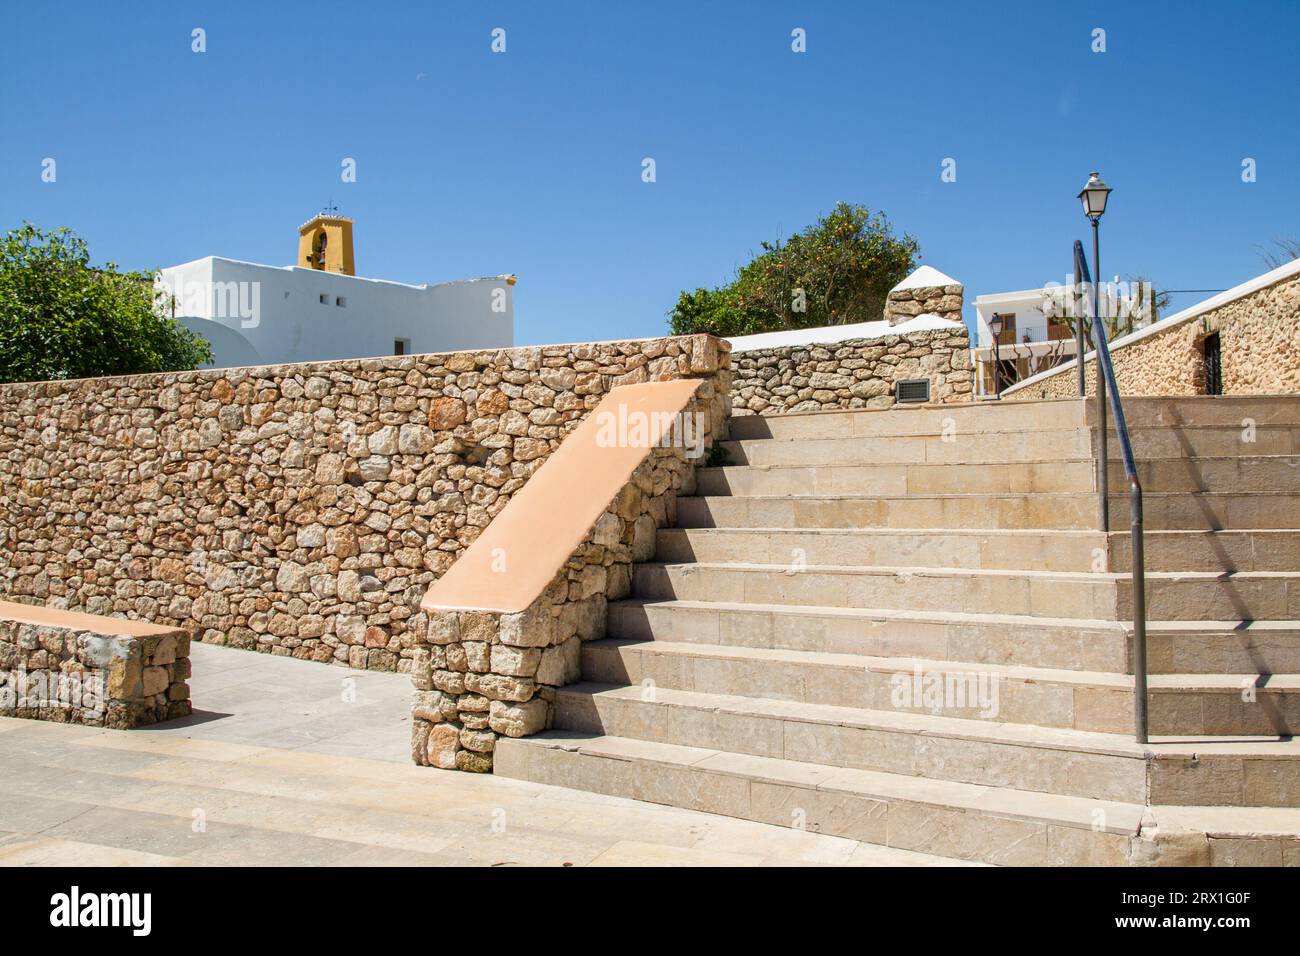 Villaggio pittoresco di Santa Gertrudis con scale e mura in mattoni, luogo famoso per una gita di un giorno all'isola di Ibiza, alle isole Baleari, alla Spagna e all'Europa Foto Stock